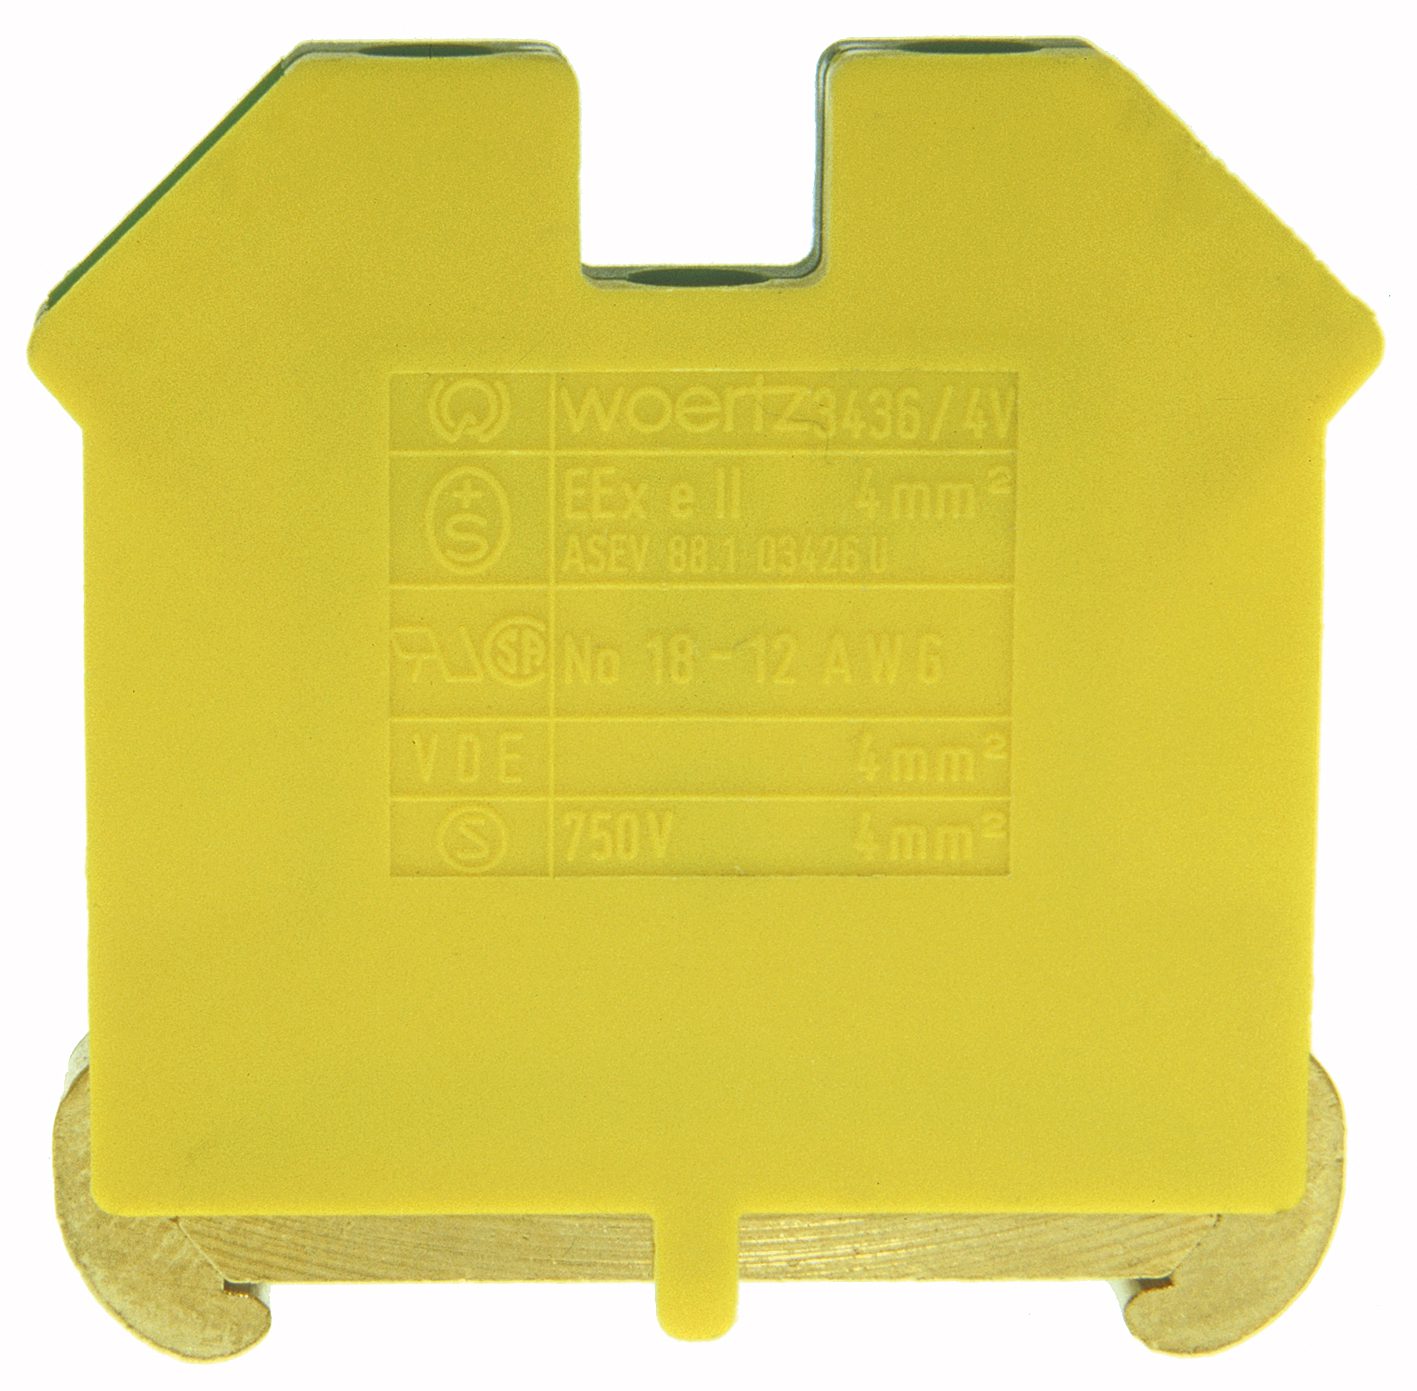 Borne conductor de protección DIN35 4mm² verde/amarillo